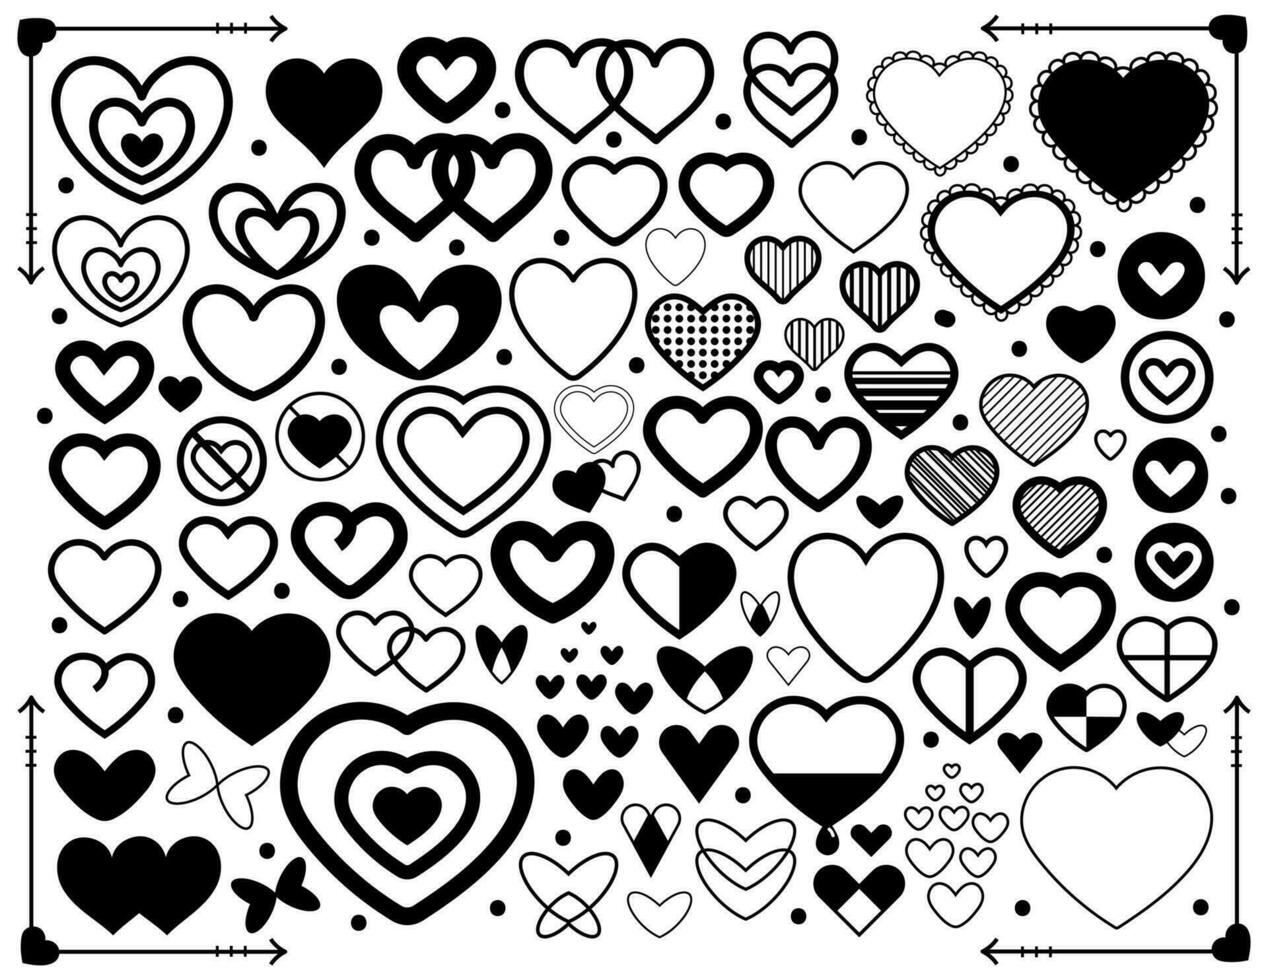 negro y blanco conjunto de corazones. sencillo mano dibujado corazón iconos vector ilustración.